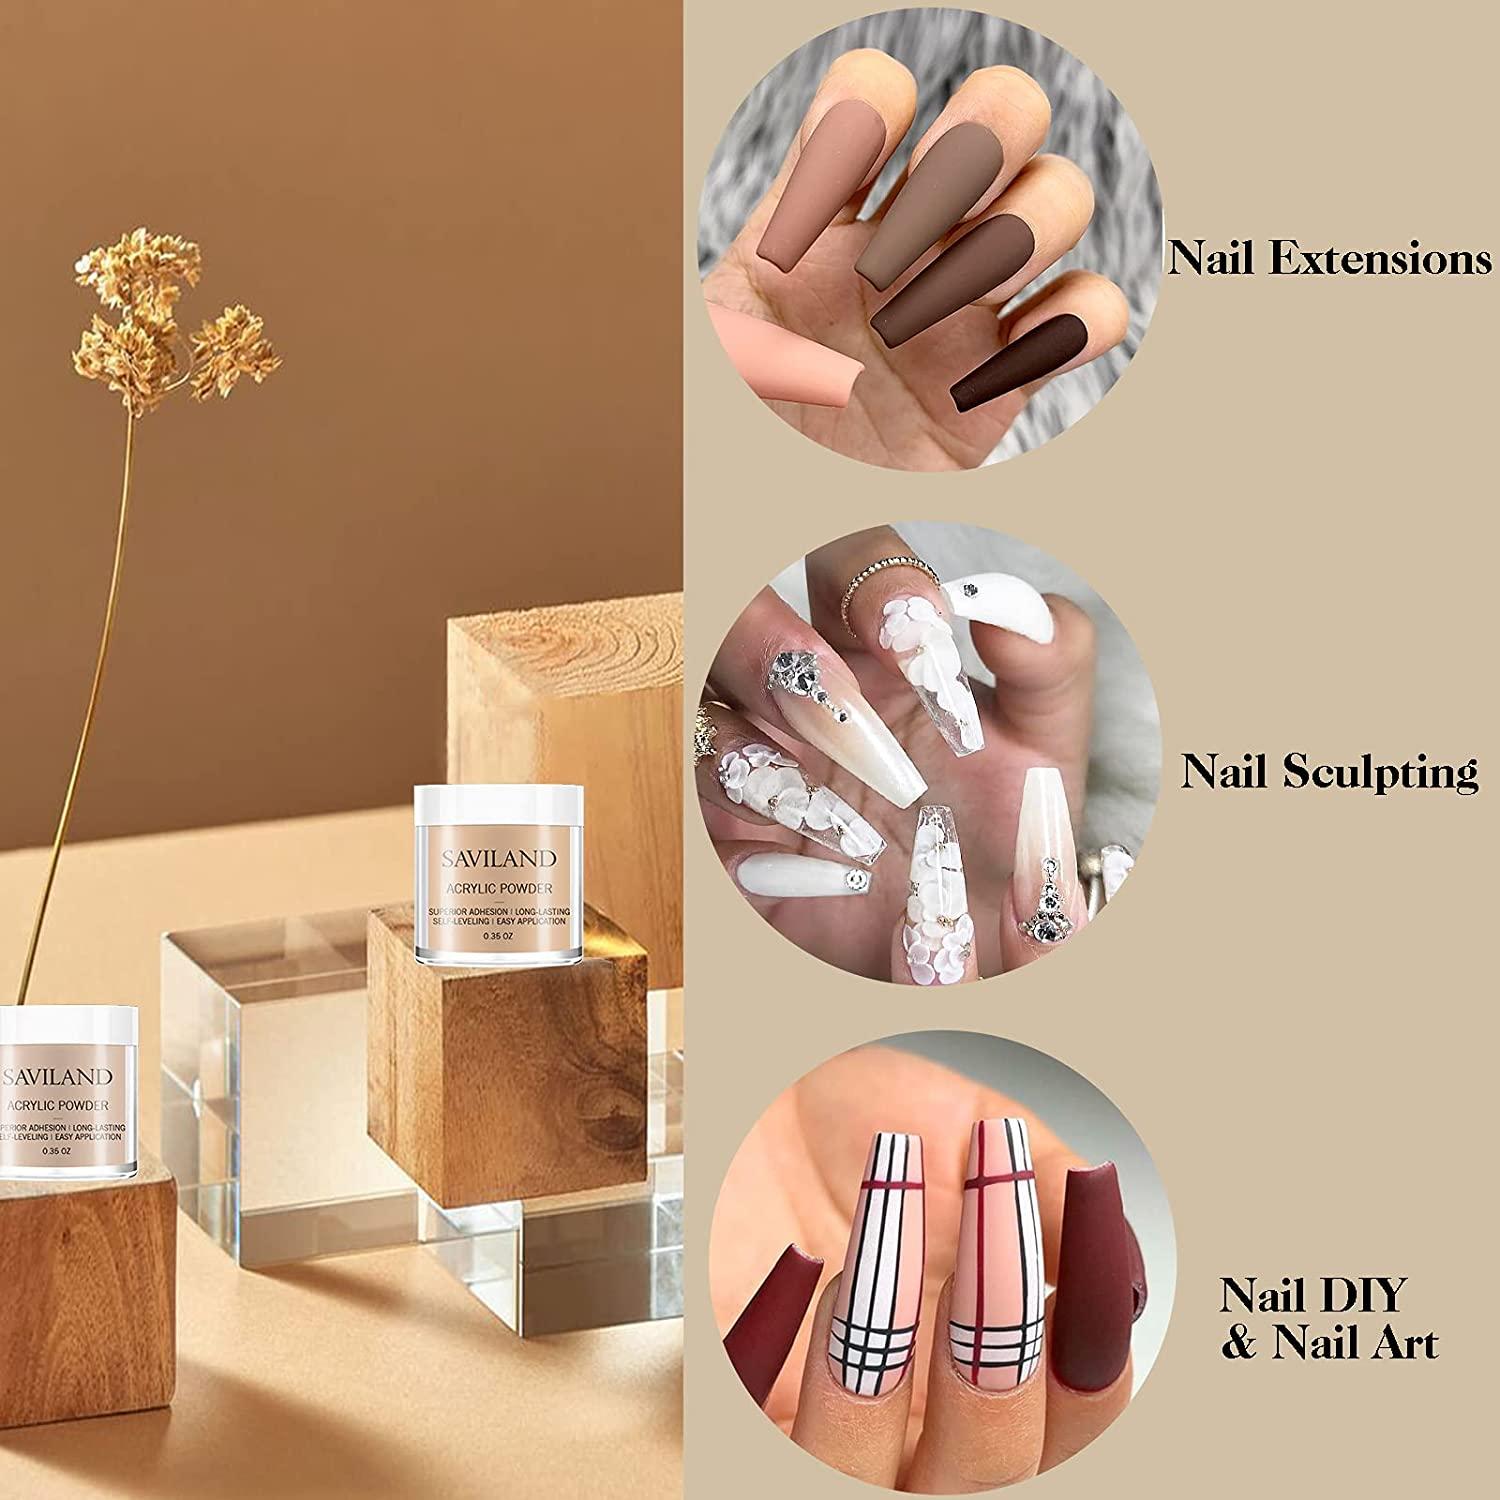  Saviland Acrylic Powder and Acrylic Liquid - Acrylic Nail  Powder 10 Colors Polymer Nails Powder for Natural Nails Carving French Nail  Extension : Beauty & Personal Care